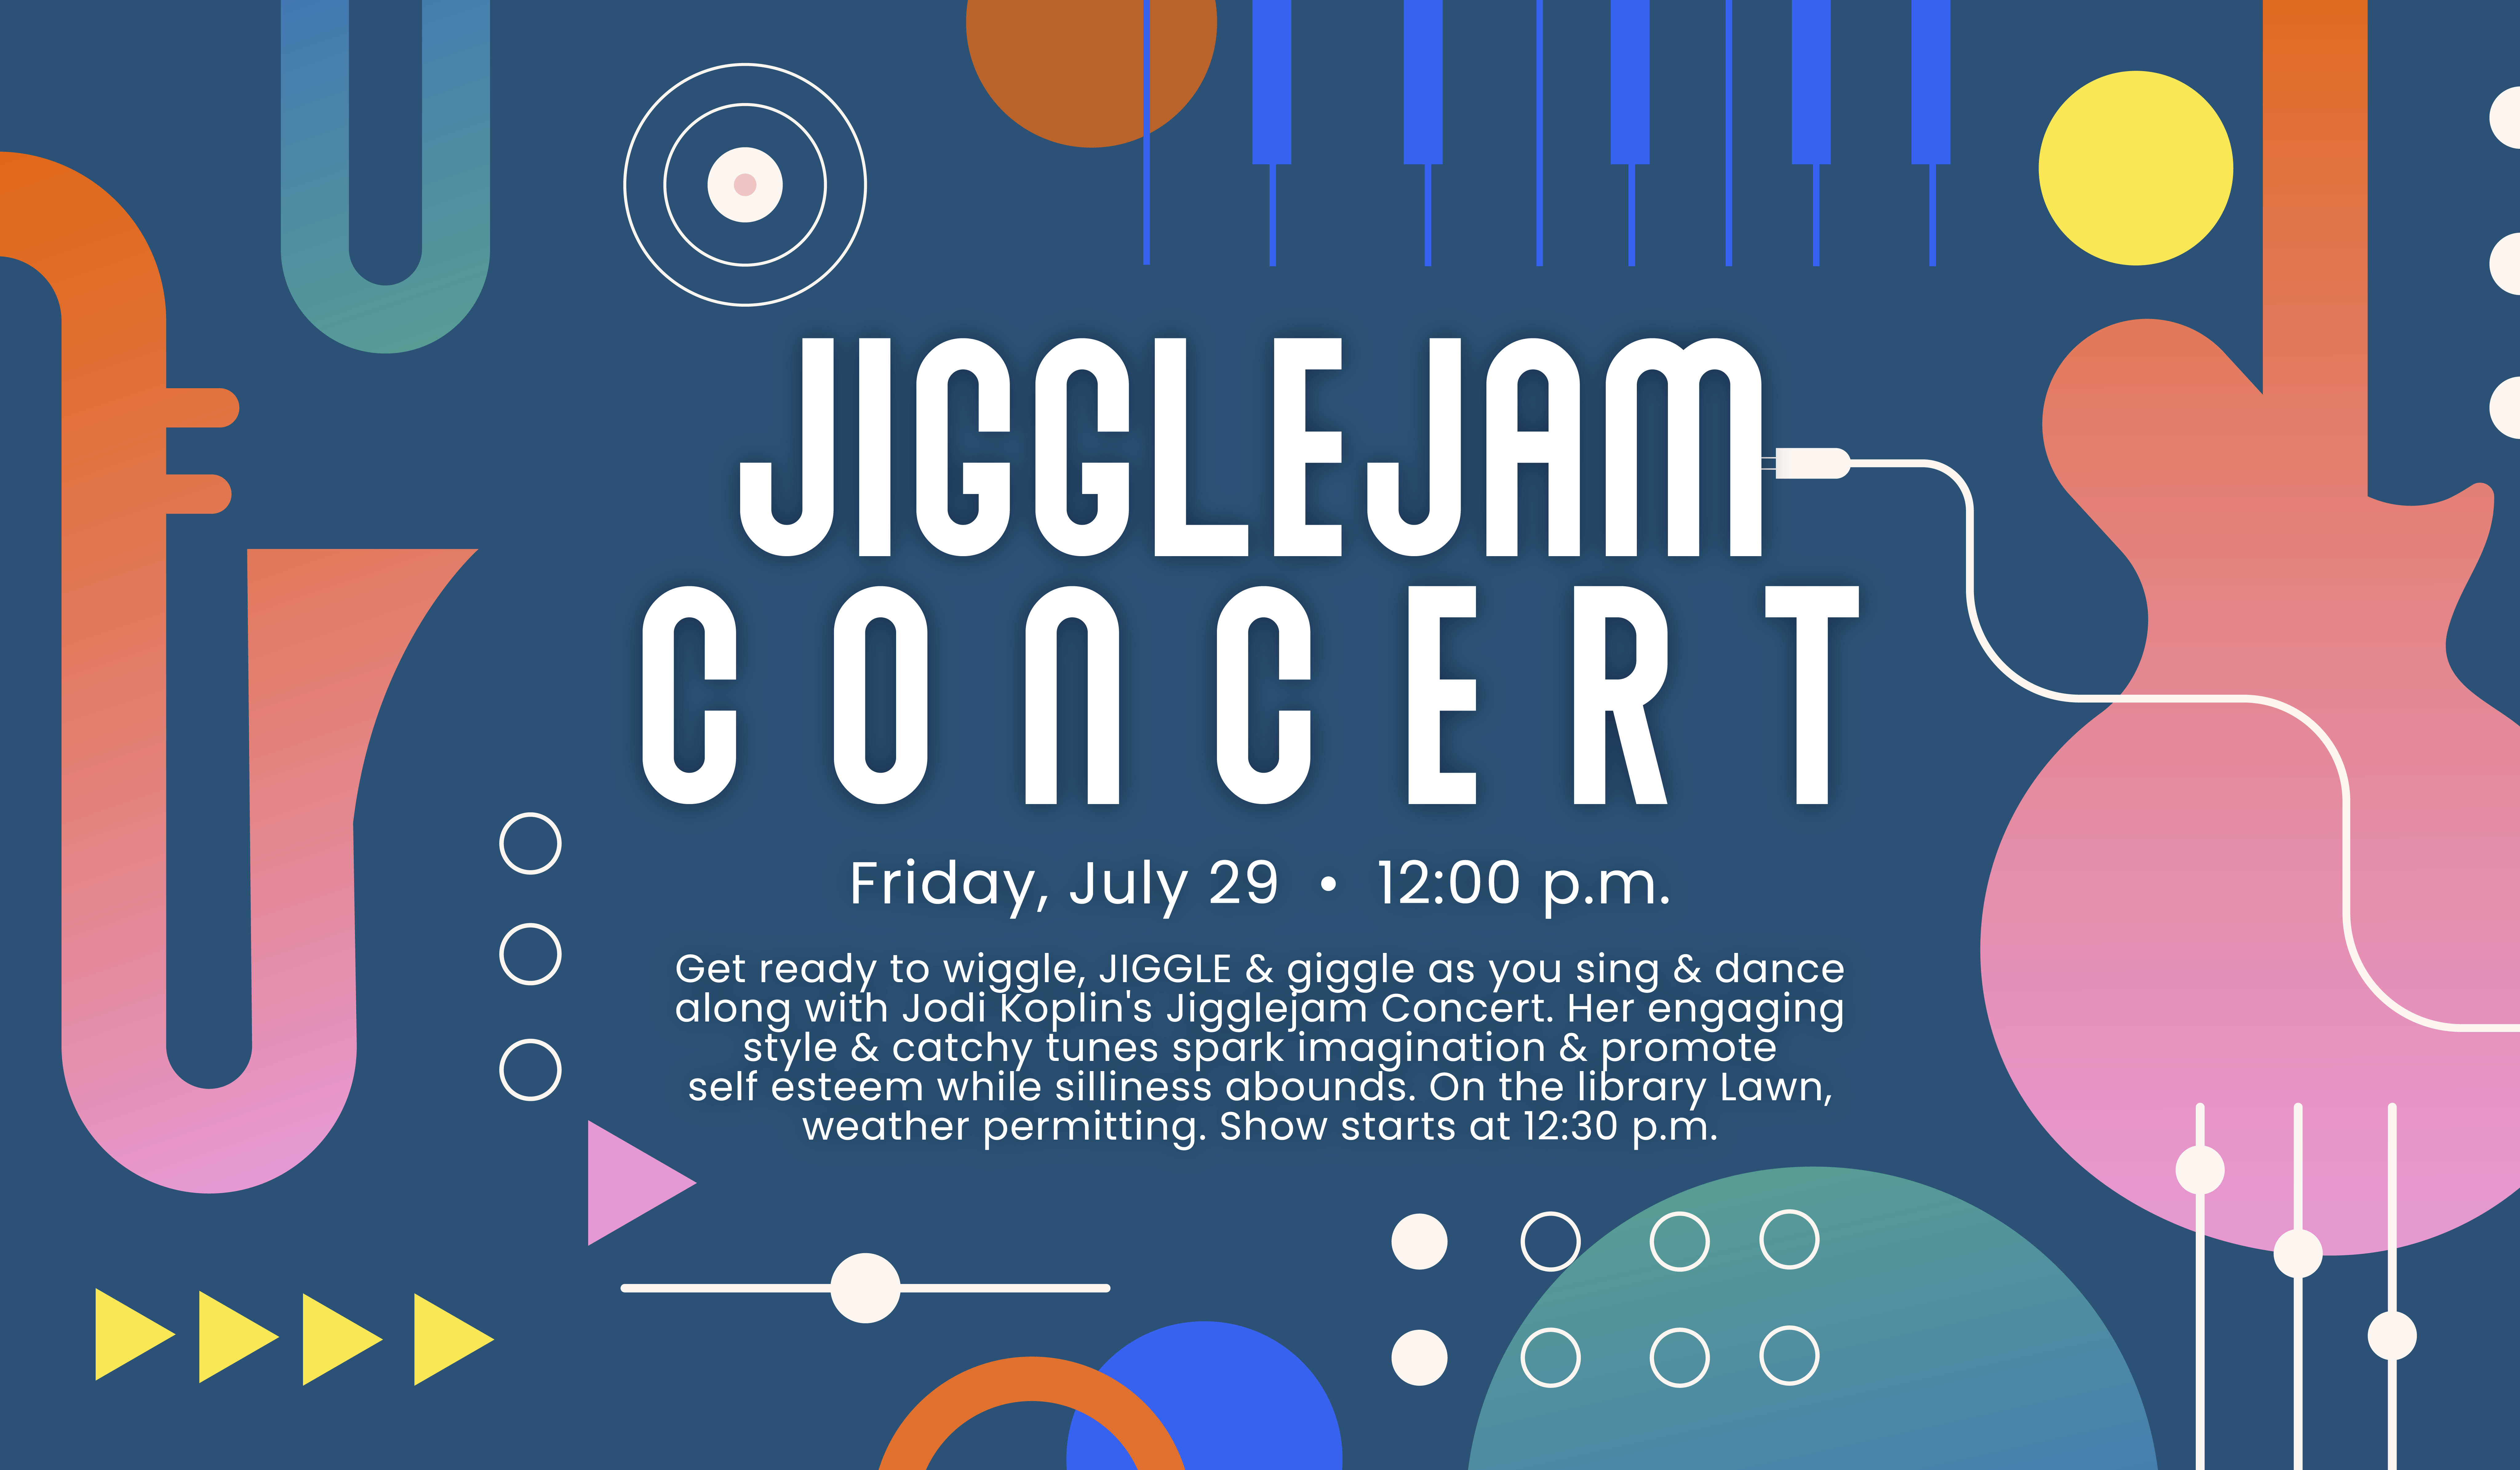 Jigglejam concert info